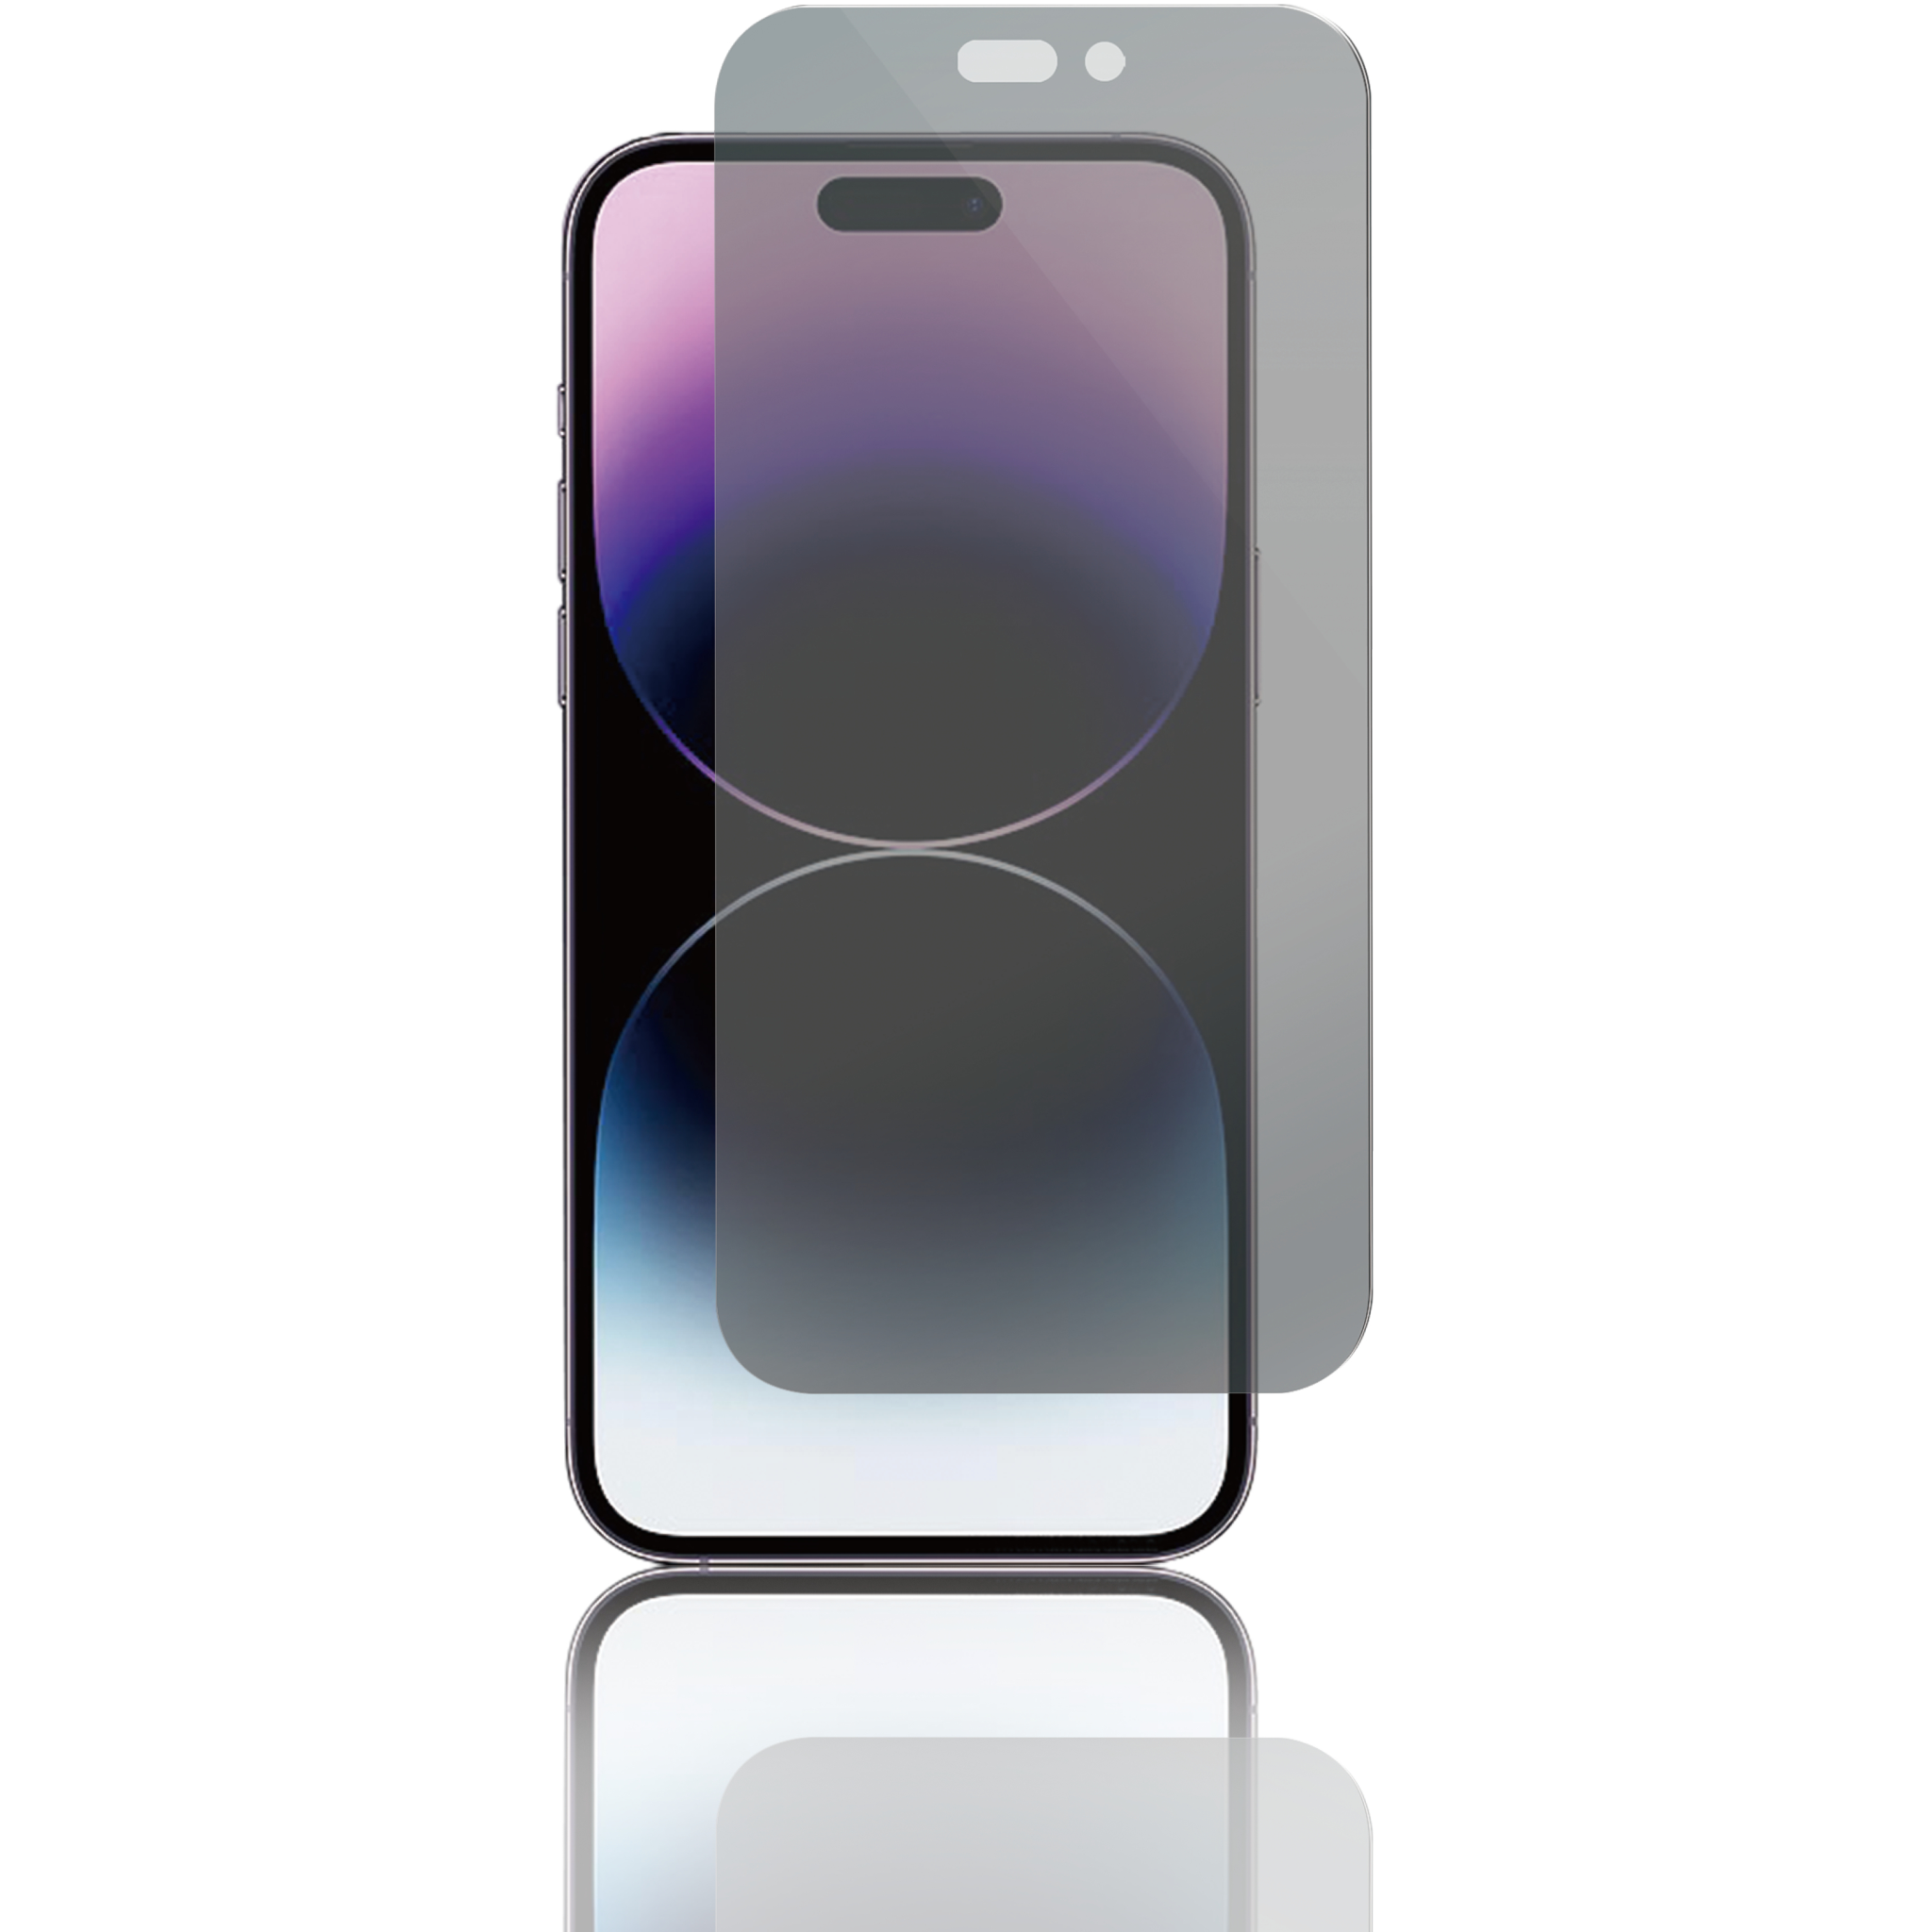 5706470134829 Panzer iPhone 14 Pro Full-Fit Privacy Glass 2-way - Privacy  Telefon & GPS,Tilbehør mobiltelefoner,Tilbehør til iPhone 74600009560 0